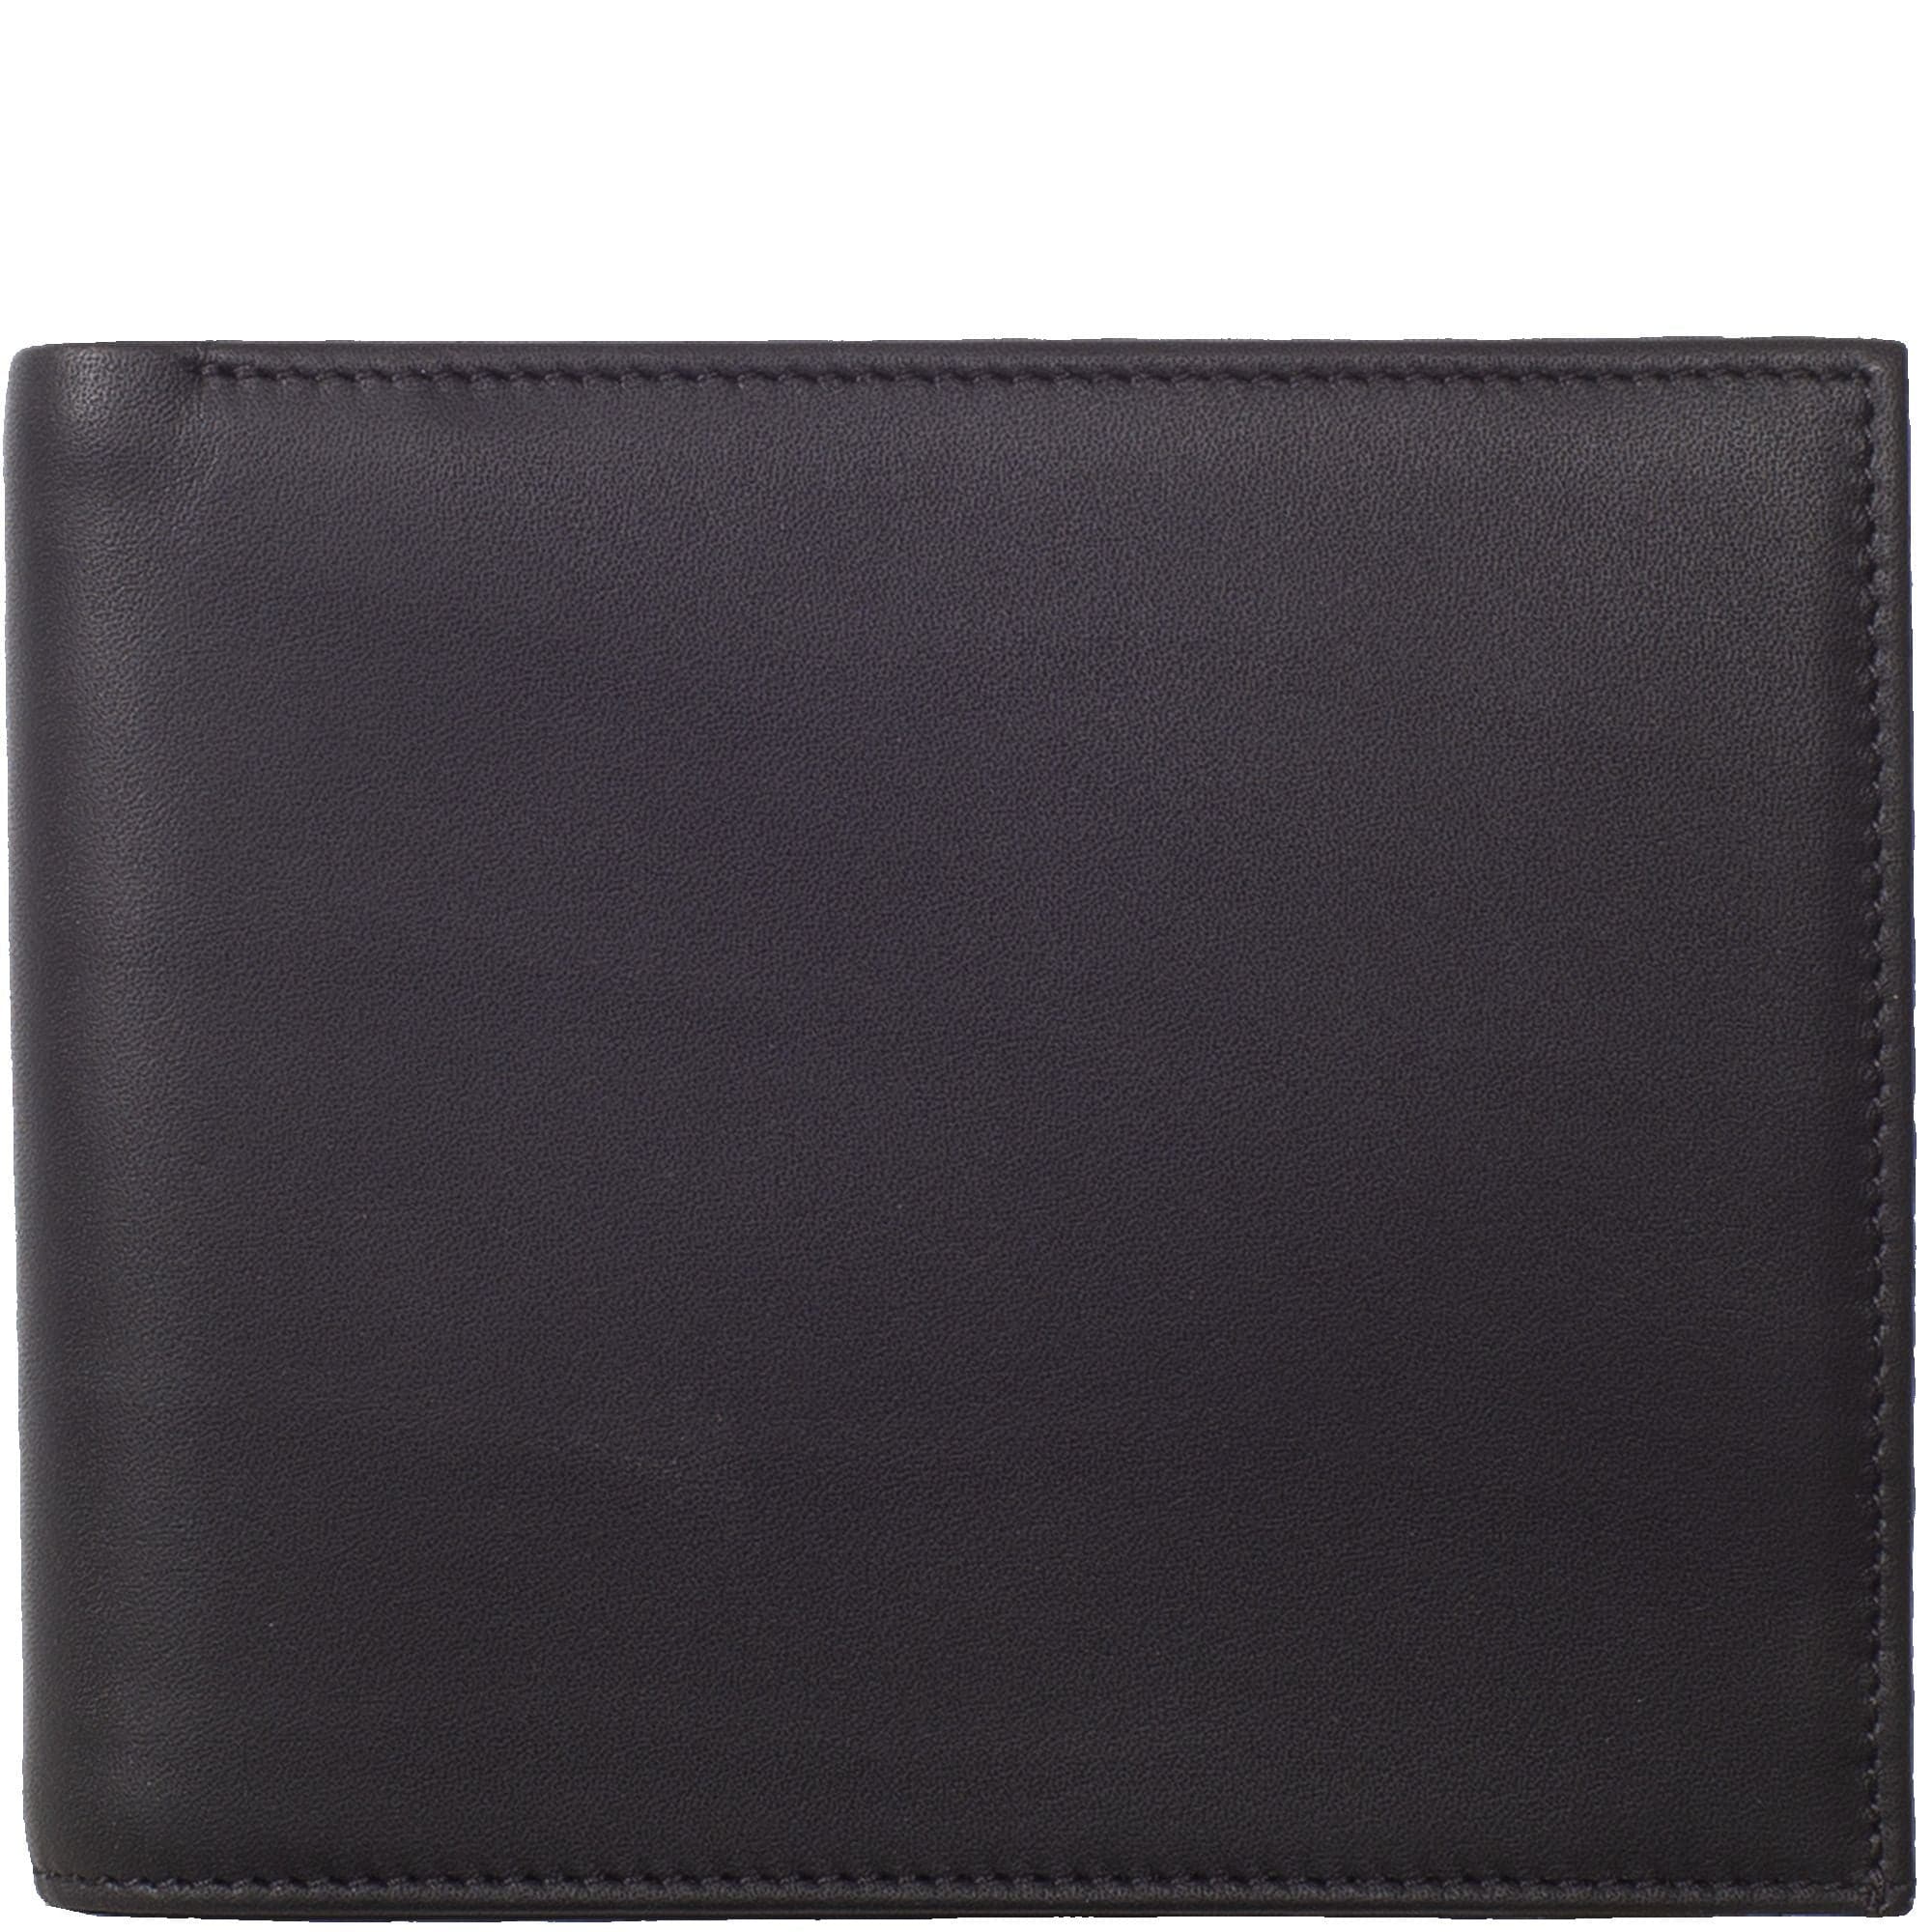 Geldbörse Portemonnaie Leder schwarz mit innen Reißverschluß